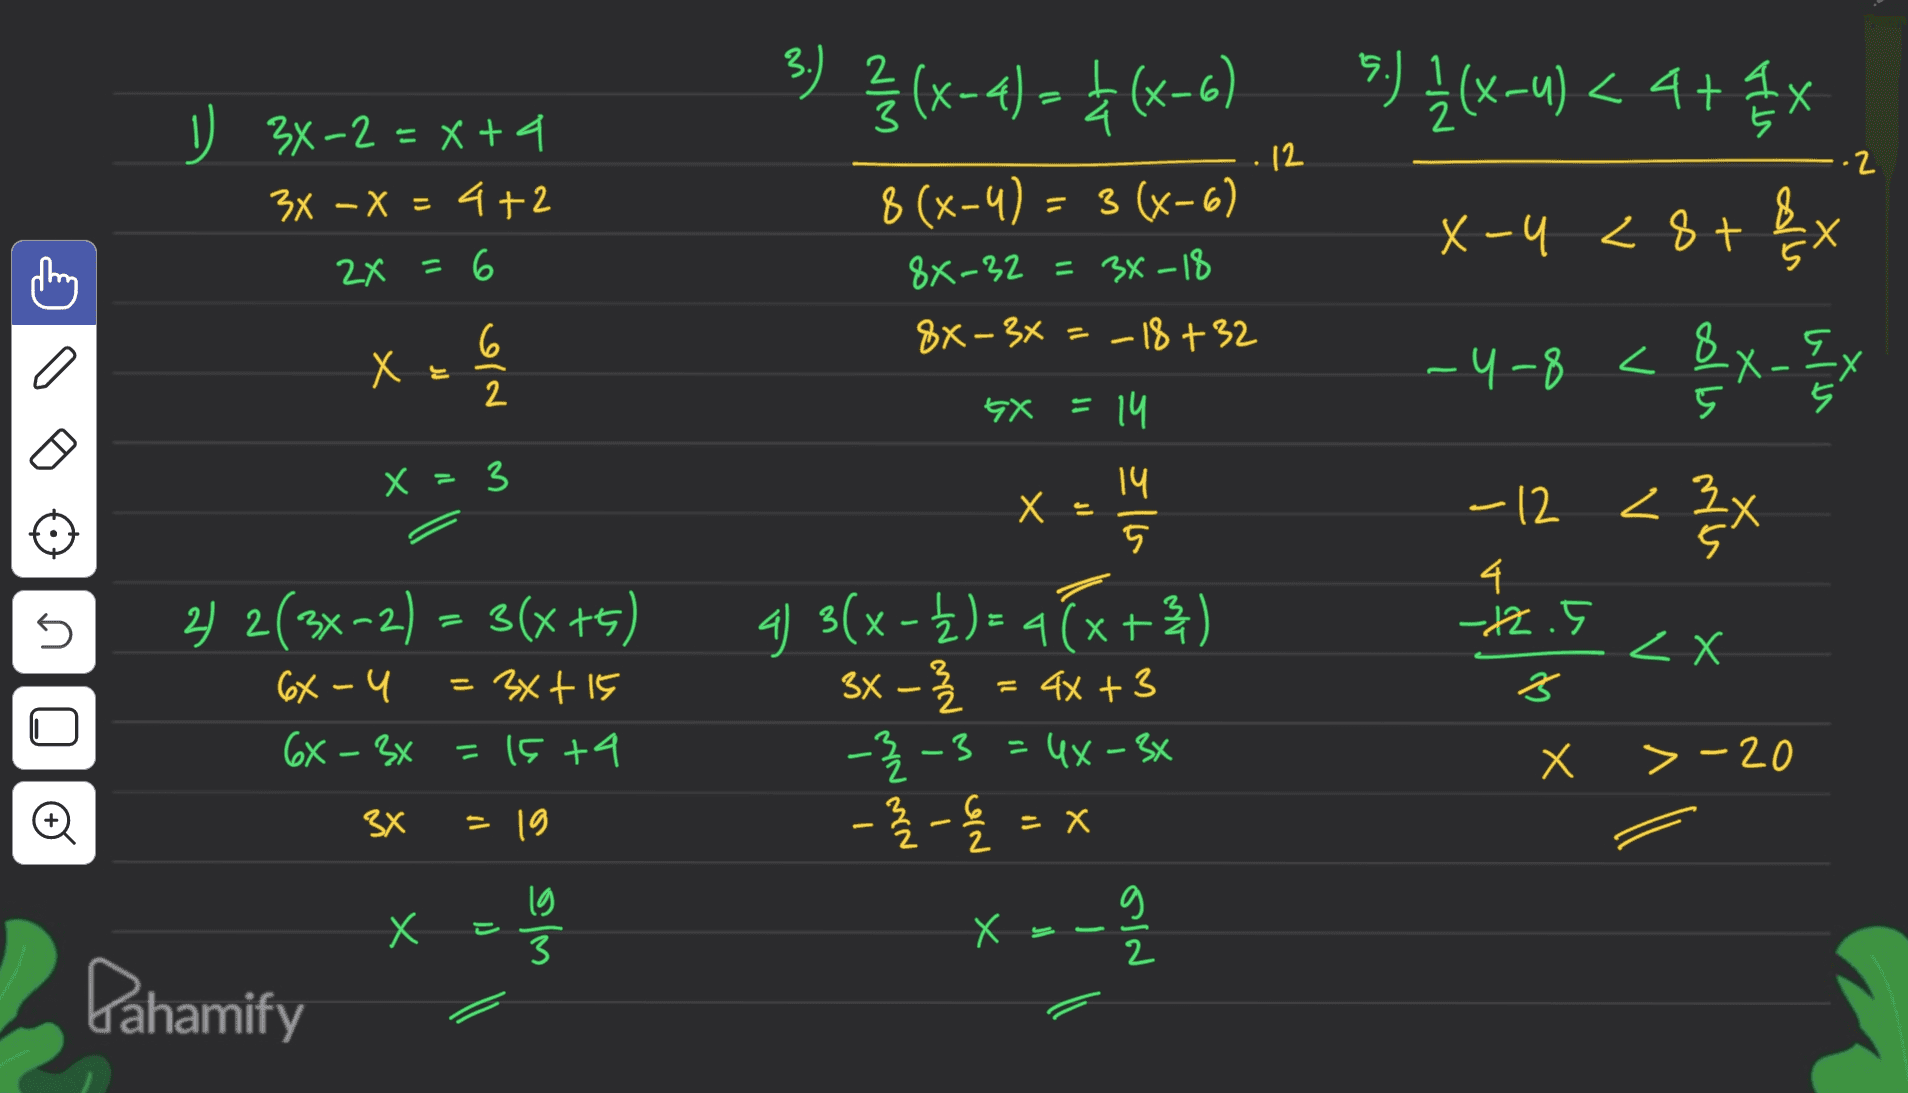 3) {(x-4) – +(3-6) 8 (x-4) = 3 (x-6) 12 ·2 0 3x-2 = x +4 3x - x = 4+2 2x = 6 =X 8X-32 = 34-18 5.) I (X-u) < 4+ 16x X-u <8+& -4-8 < 8x_{x - S X < 1/3X 8X-3X=-18 +32 X х x 는 old 8- 9x = 14 X =3 Х 14 5 -12 4 -12.5 5 2 x 2) 2(3x-2) = 3(x+5) 6x-4 = 3x + 15 6X - 3x =15+4 = 4 3(x - £) = 4(x+3) 3x - -}-3 = 4x – 3* = 4x + 3 2 X > -20 o 3X х - 6l = -- 6 2 X = X Х 1) olm Х - Nie Dahamify 